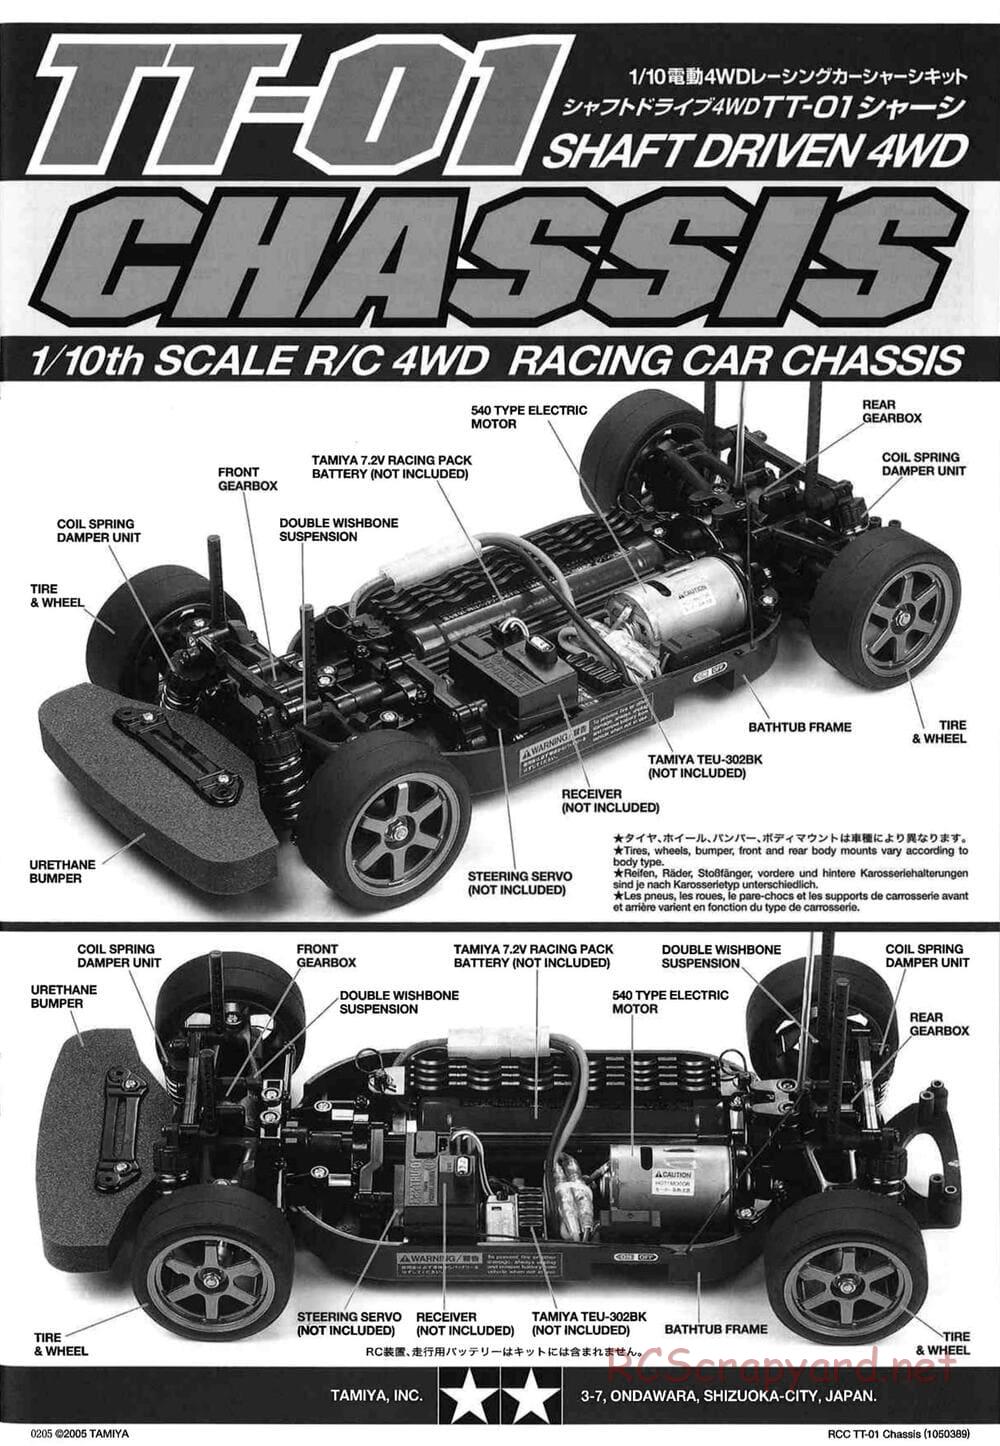 Tamiya - TT-01 Chassis - Manual - Page 1